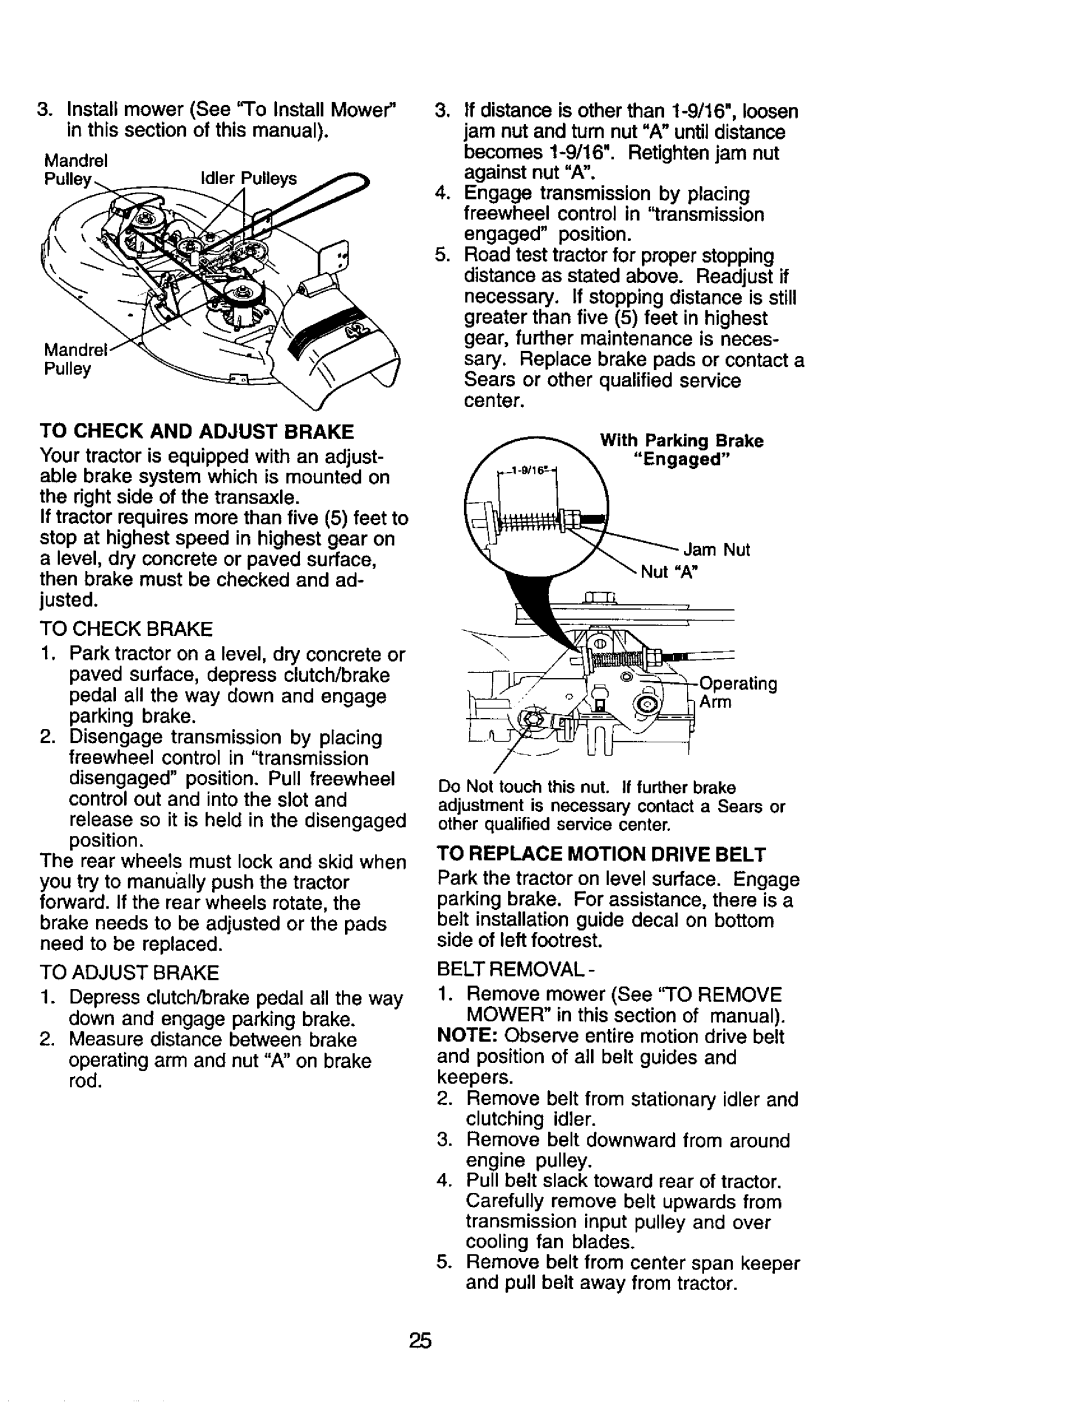 Craftsman 917.272464 owner manual To Adjust Brake 